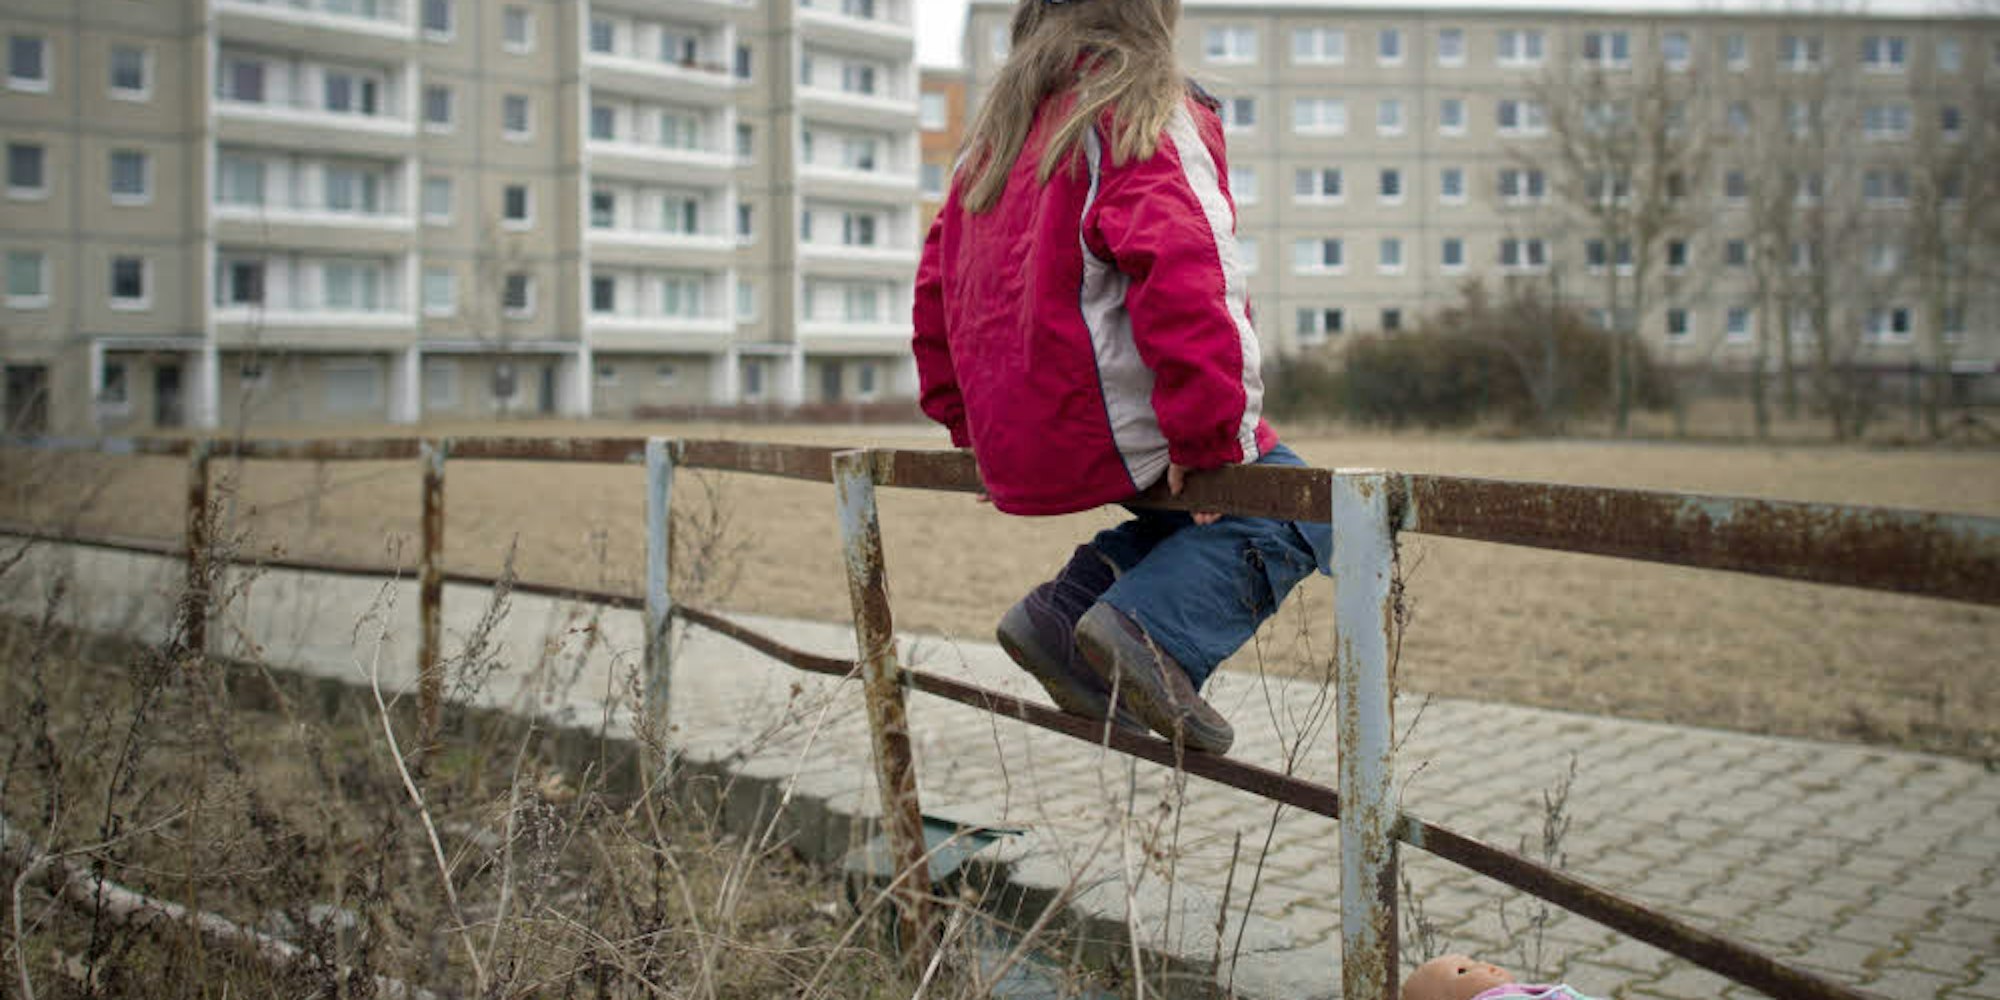 Über 5000 Kinder in Leverkusen leben in Familien mit Einkommen in Form von Sozialleistungen nach Hartz IV.